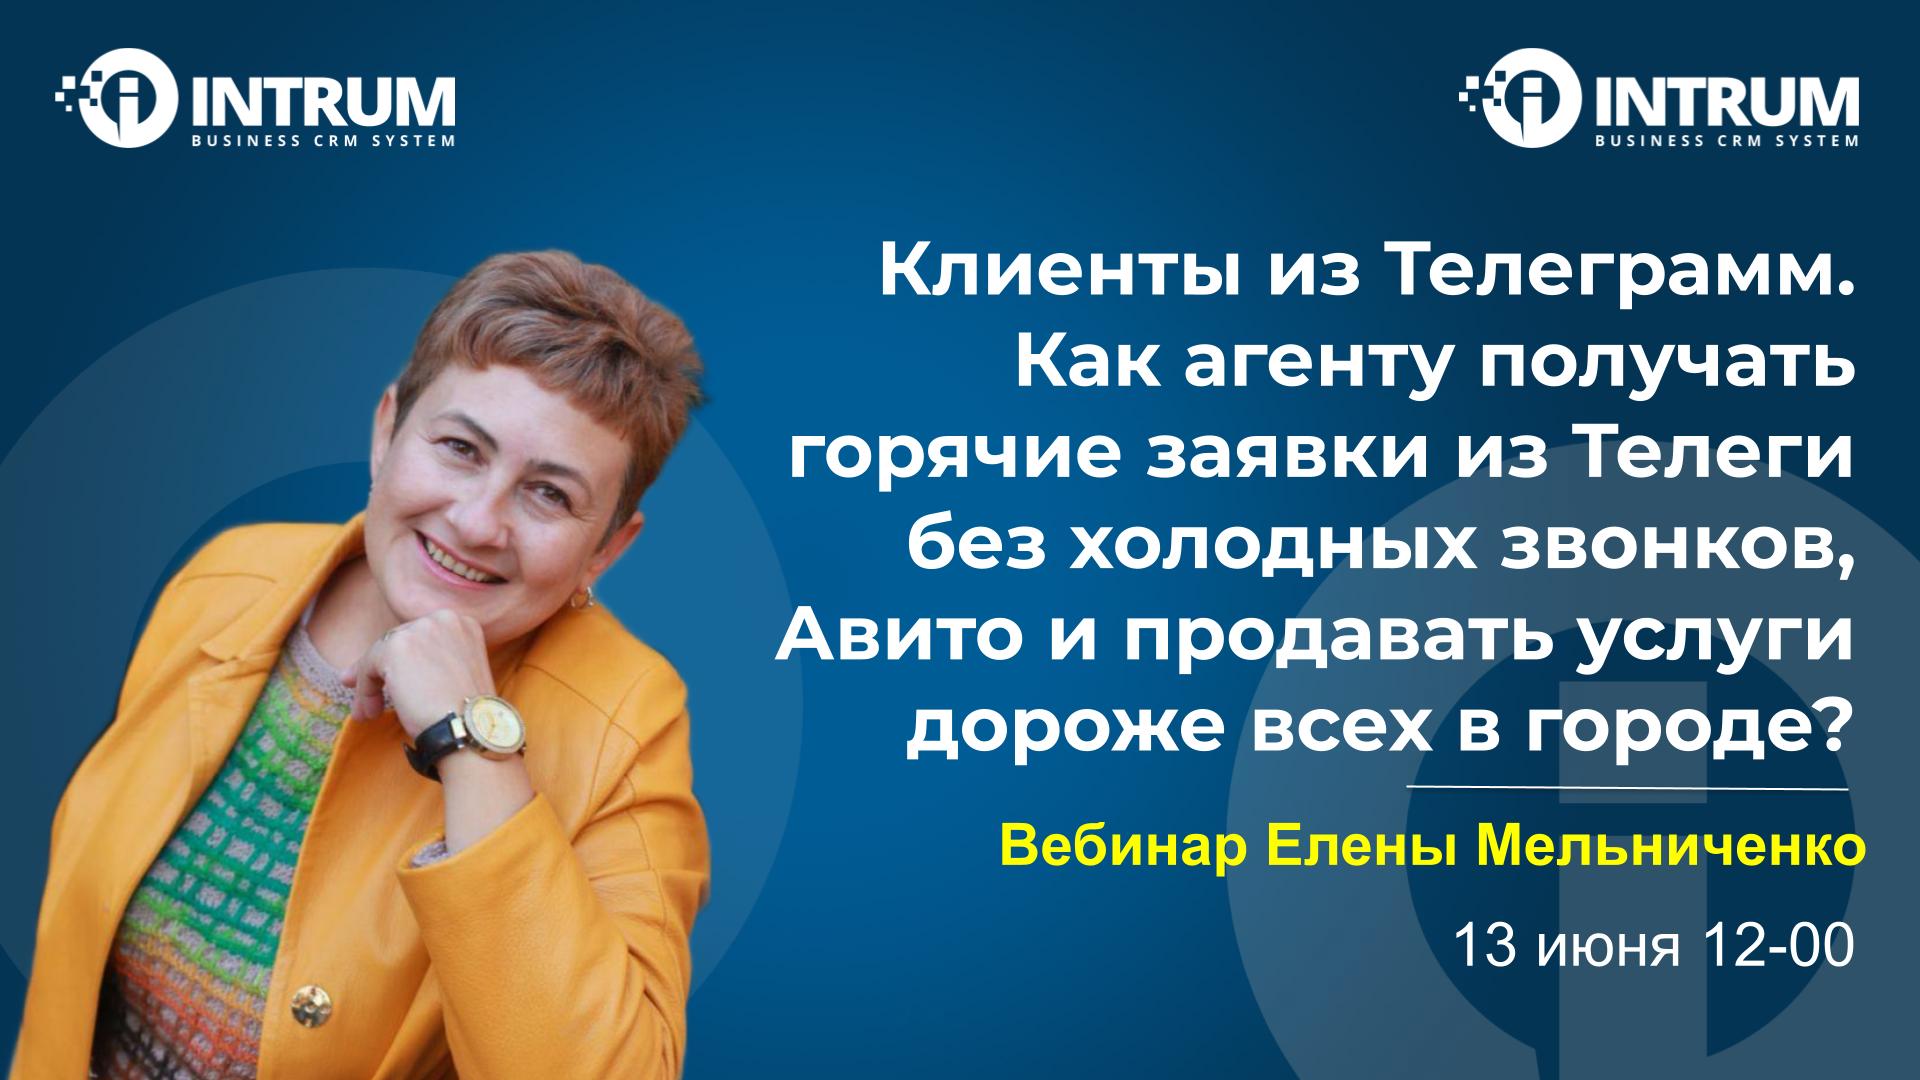 Вебинар Елены Мельниченко 